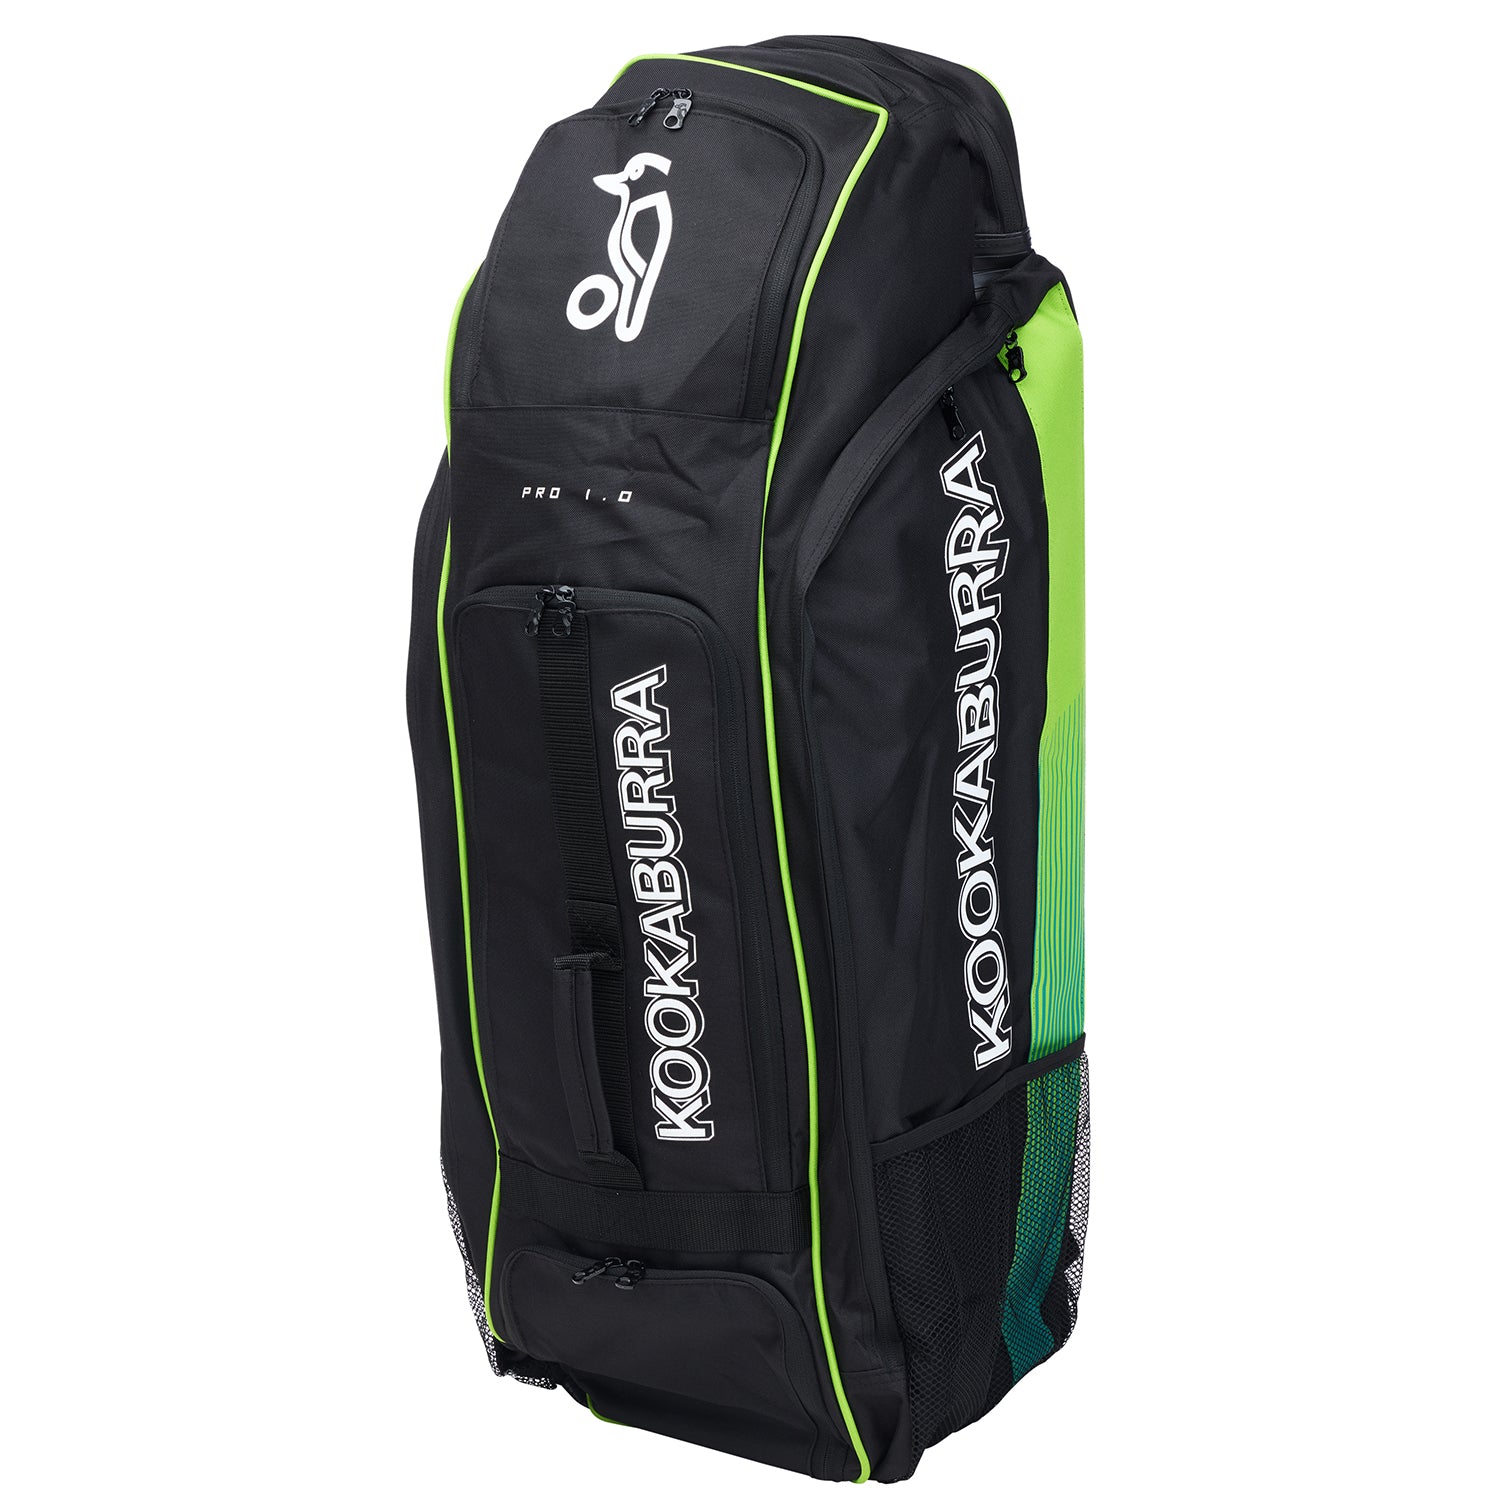 Kookaburra Pro 1.0 Cricket Duffle Bag